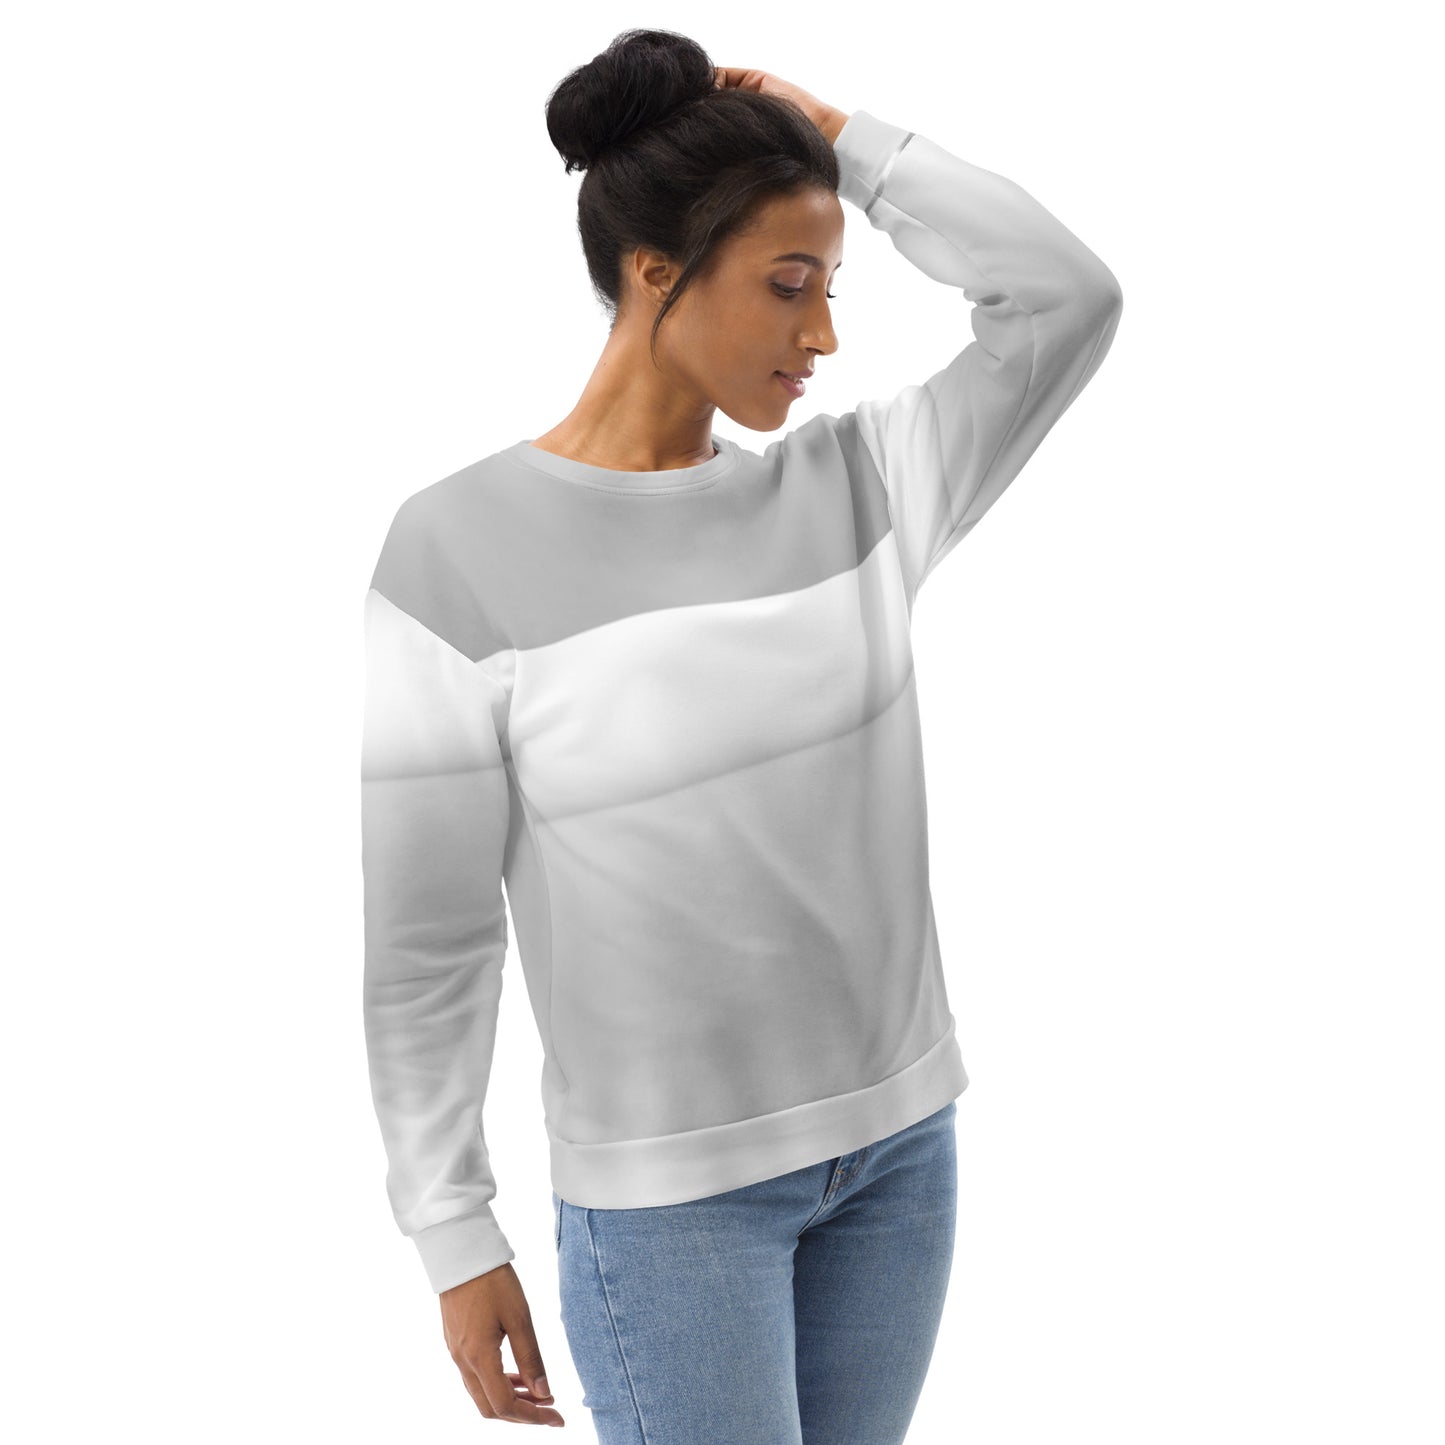 LBS Women's Silver Spotlight Sweatshirt - White